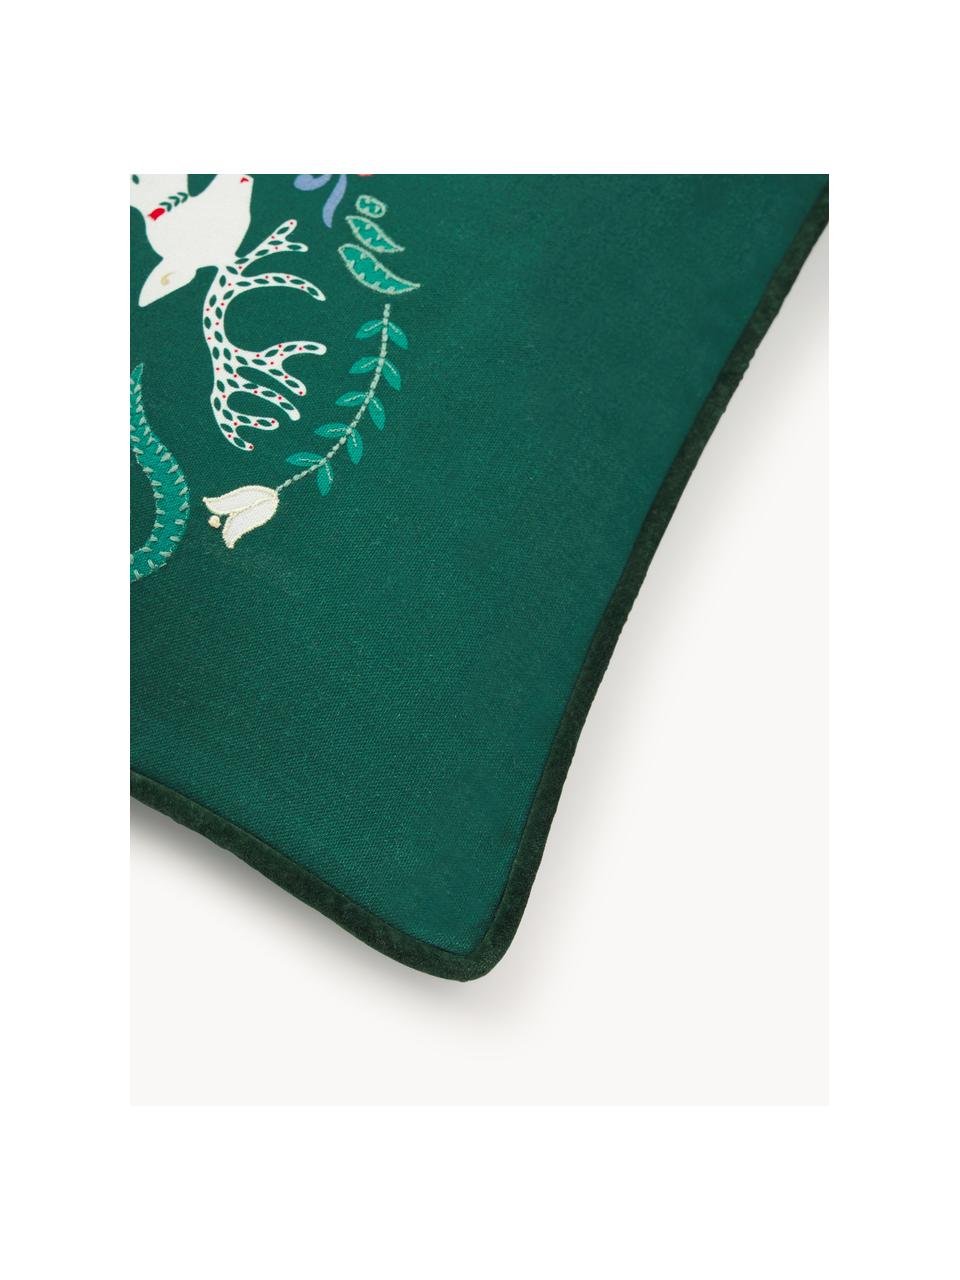 Poszewka na poduszkę Deers, Tapicerka: 100% bawełna, Zielony, S 45 x D 45 cm